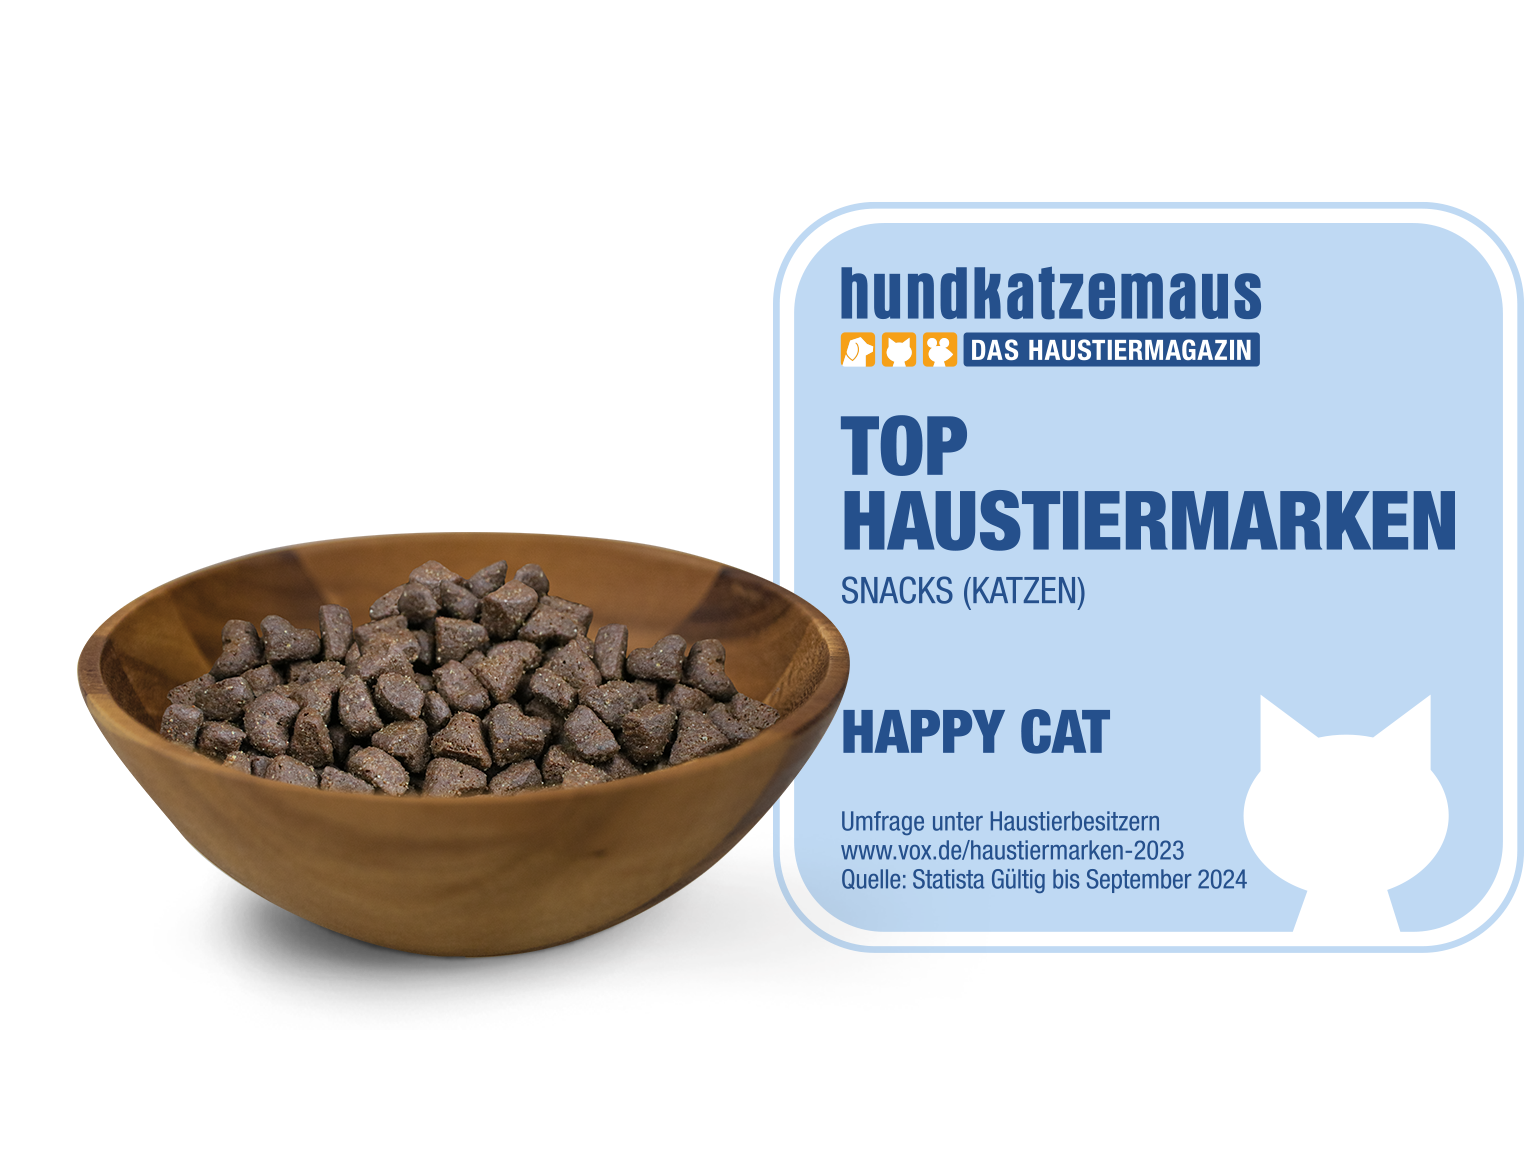 Holzschälchen mit Katzensnacks in Herzform und daneben das hundkatzemaus-Siegel zu den Top Haustiermarken